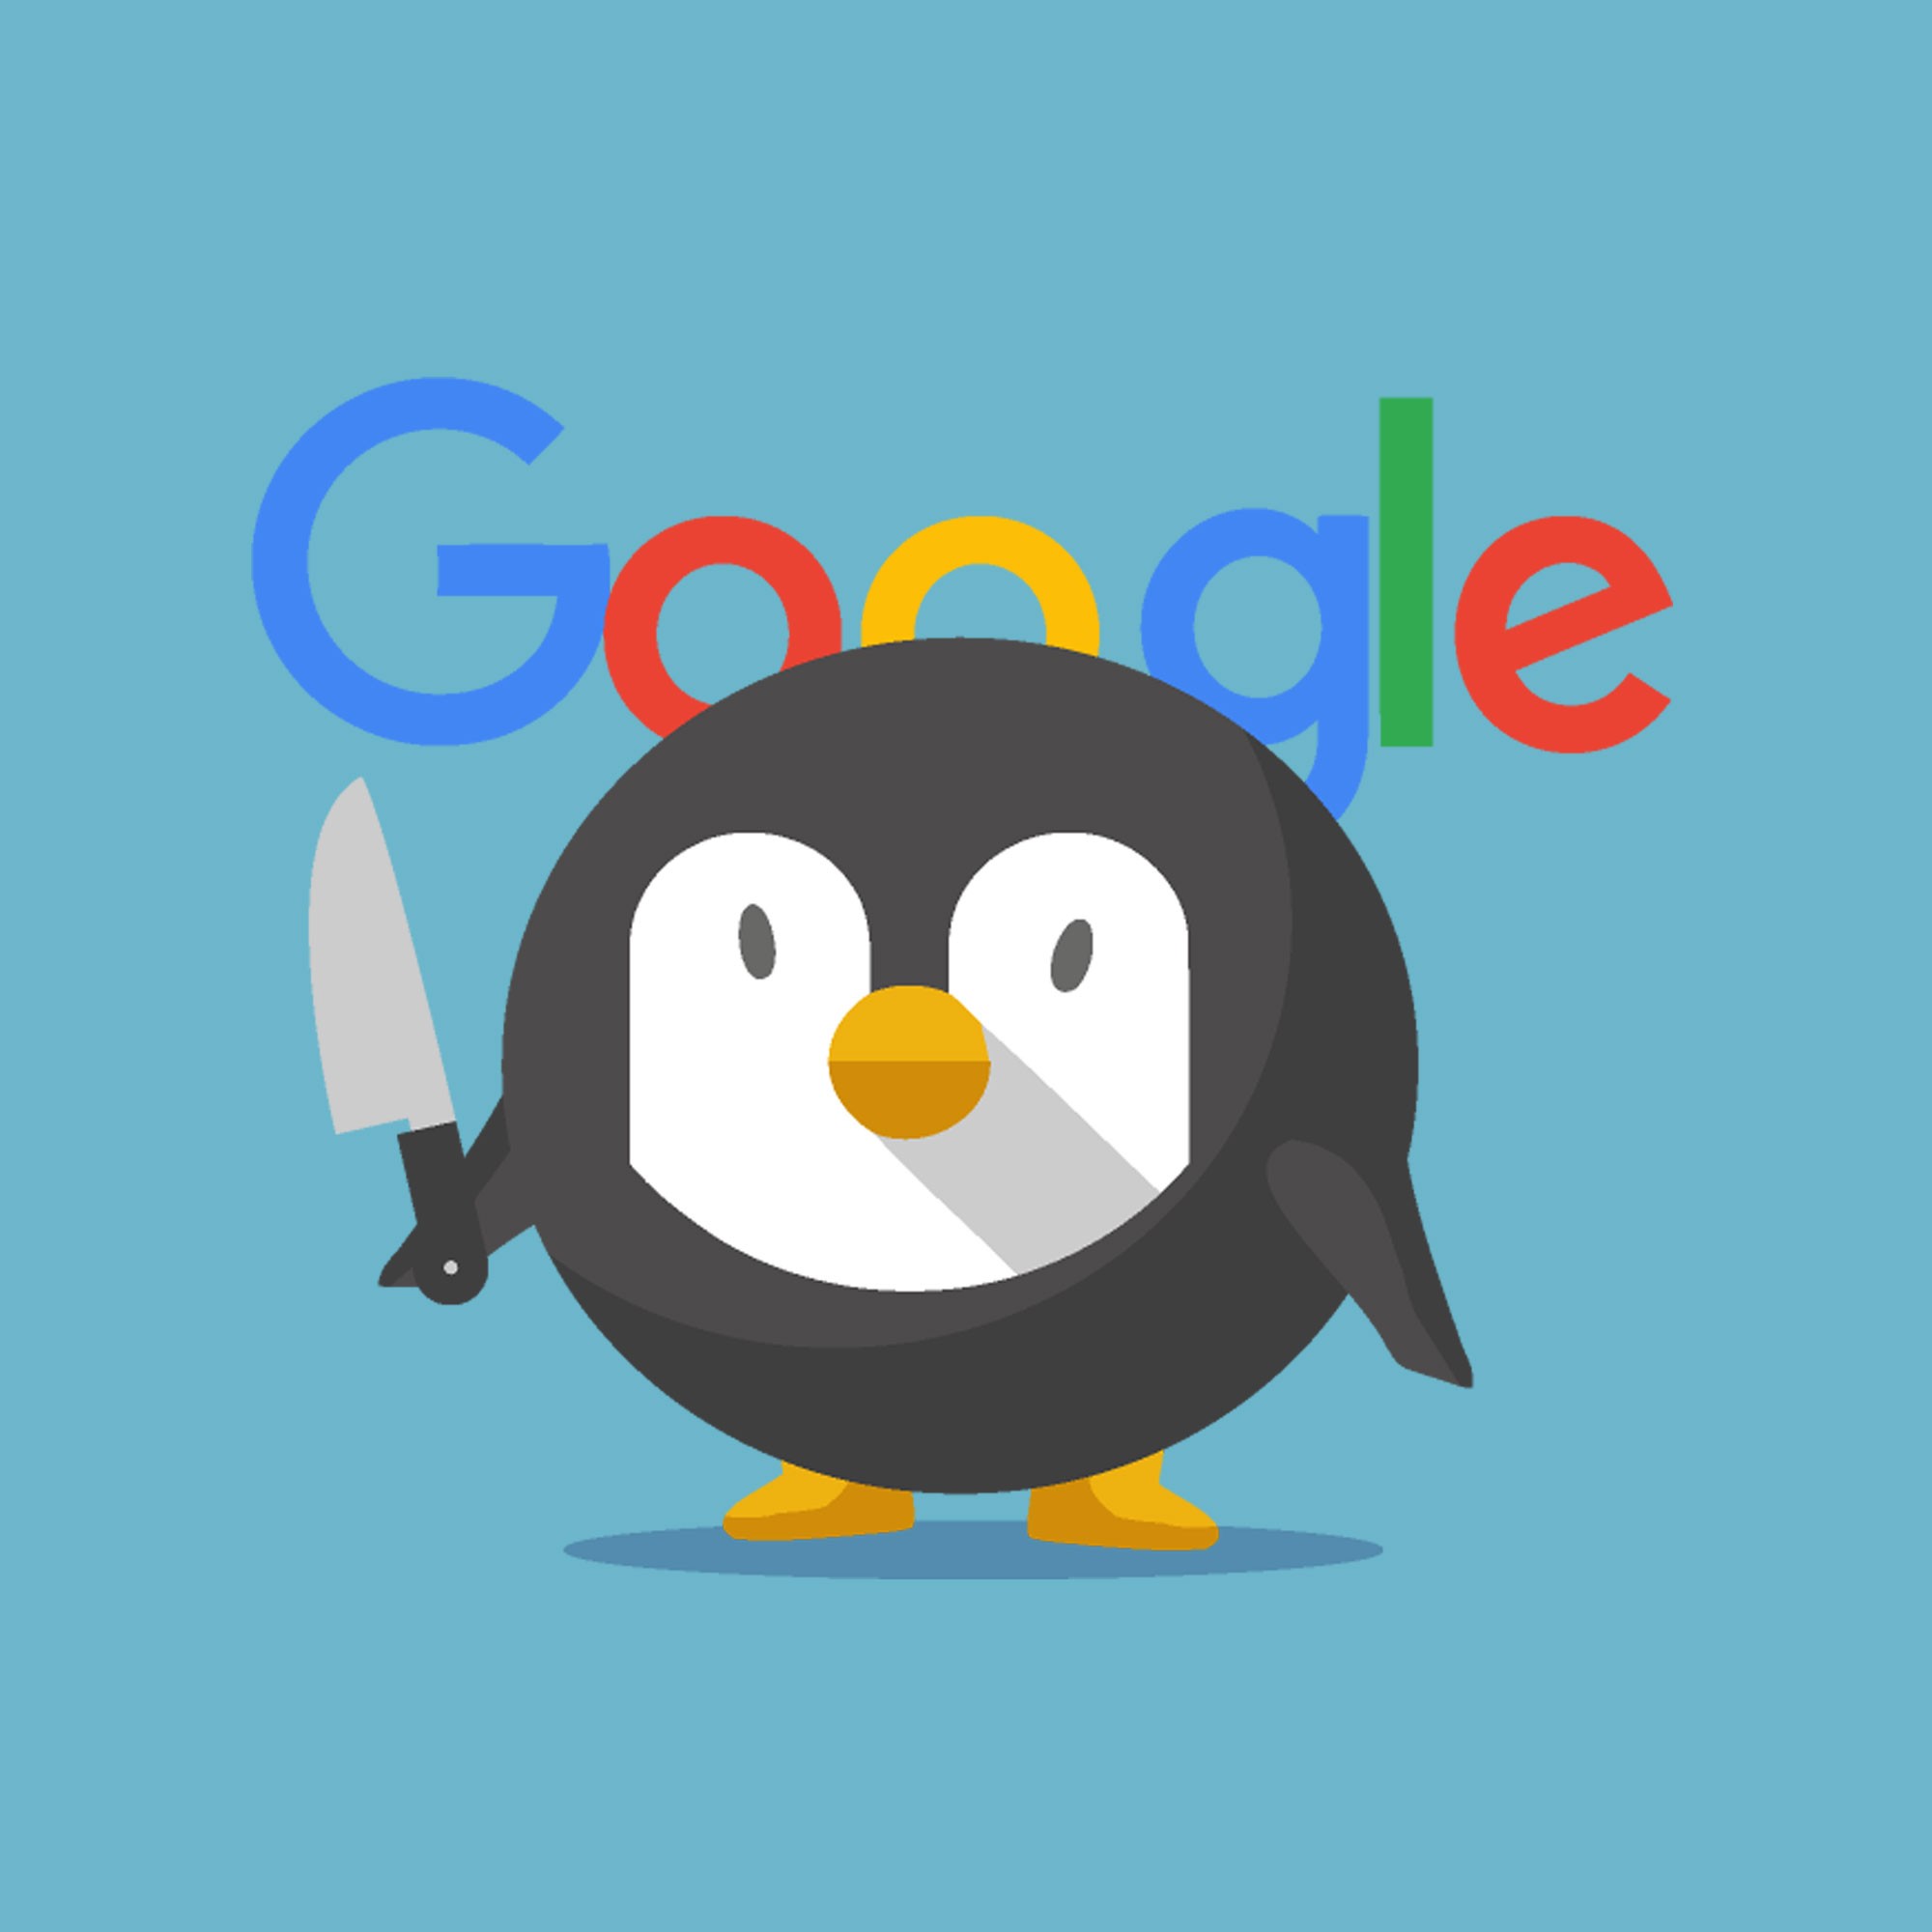 google-penguin-penalty2569.jpg